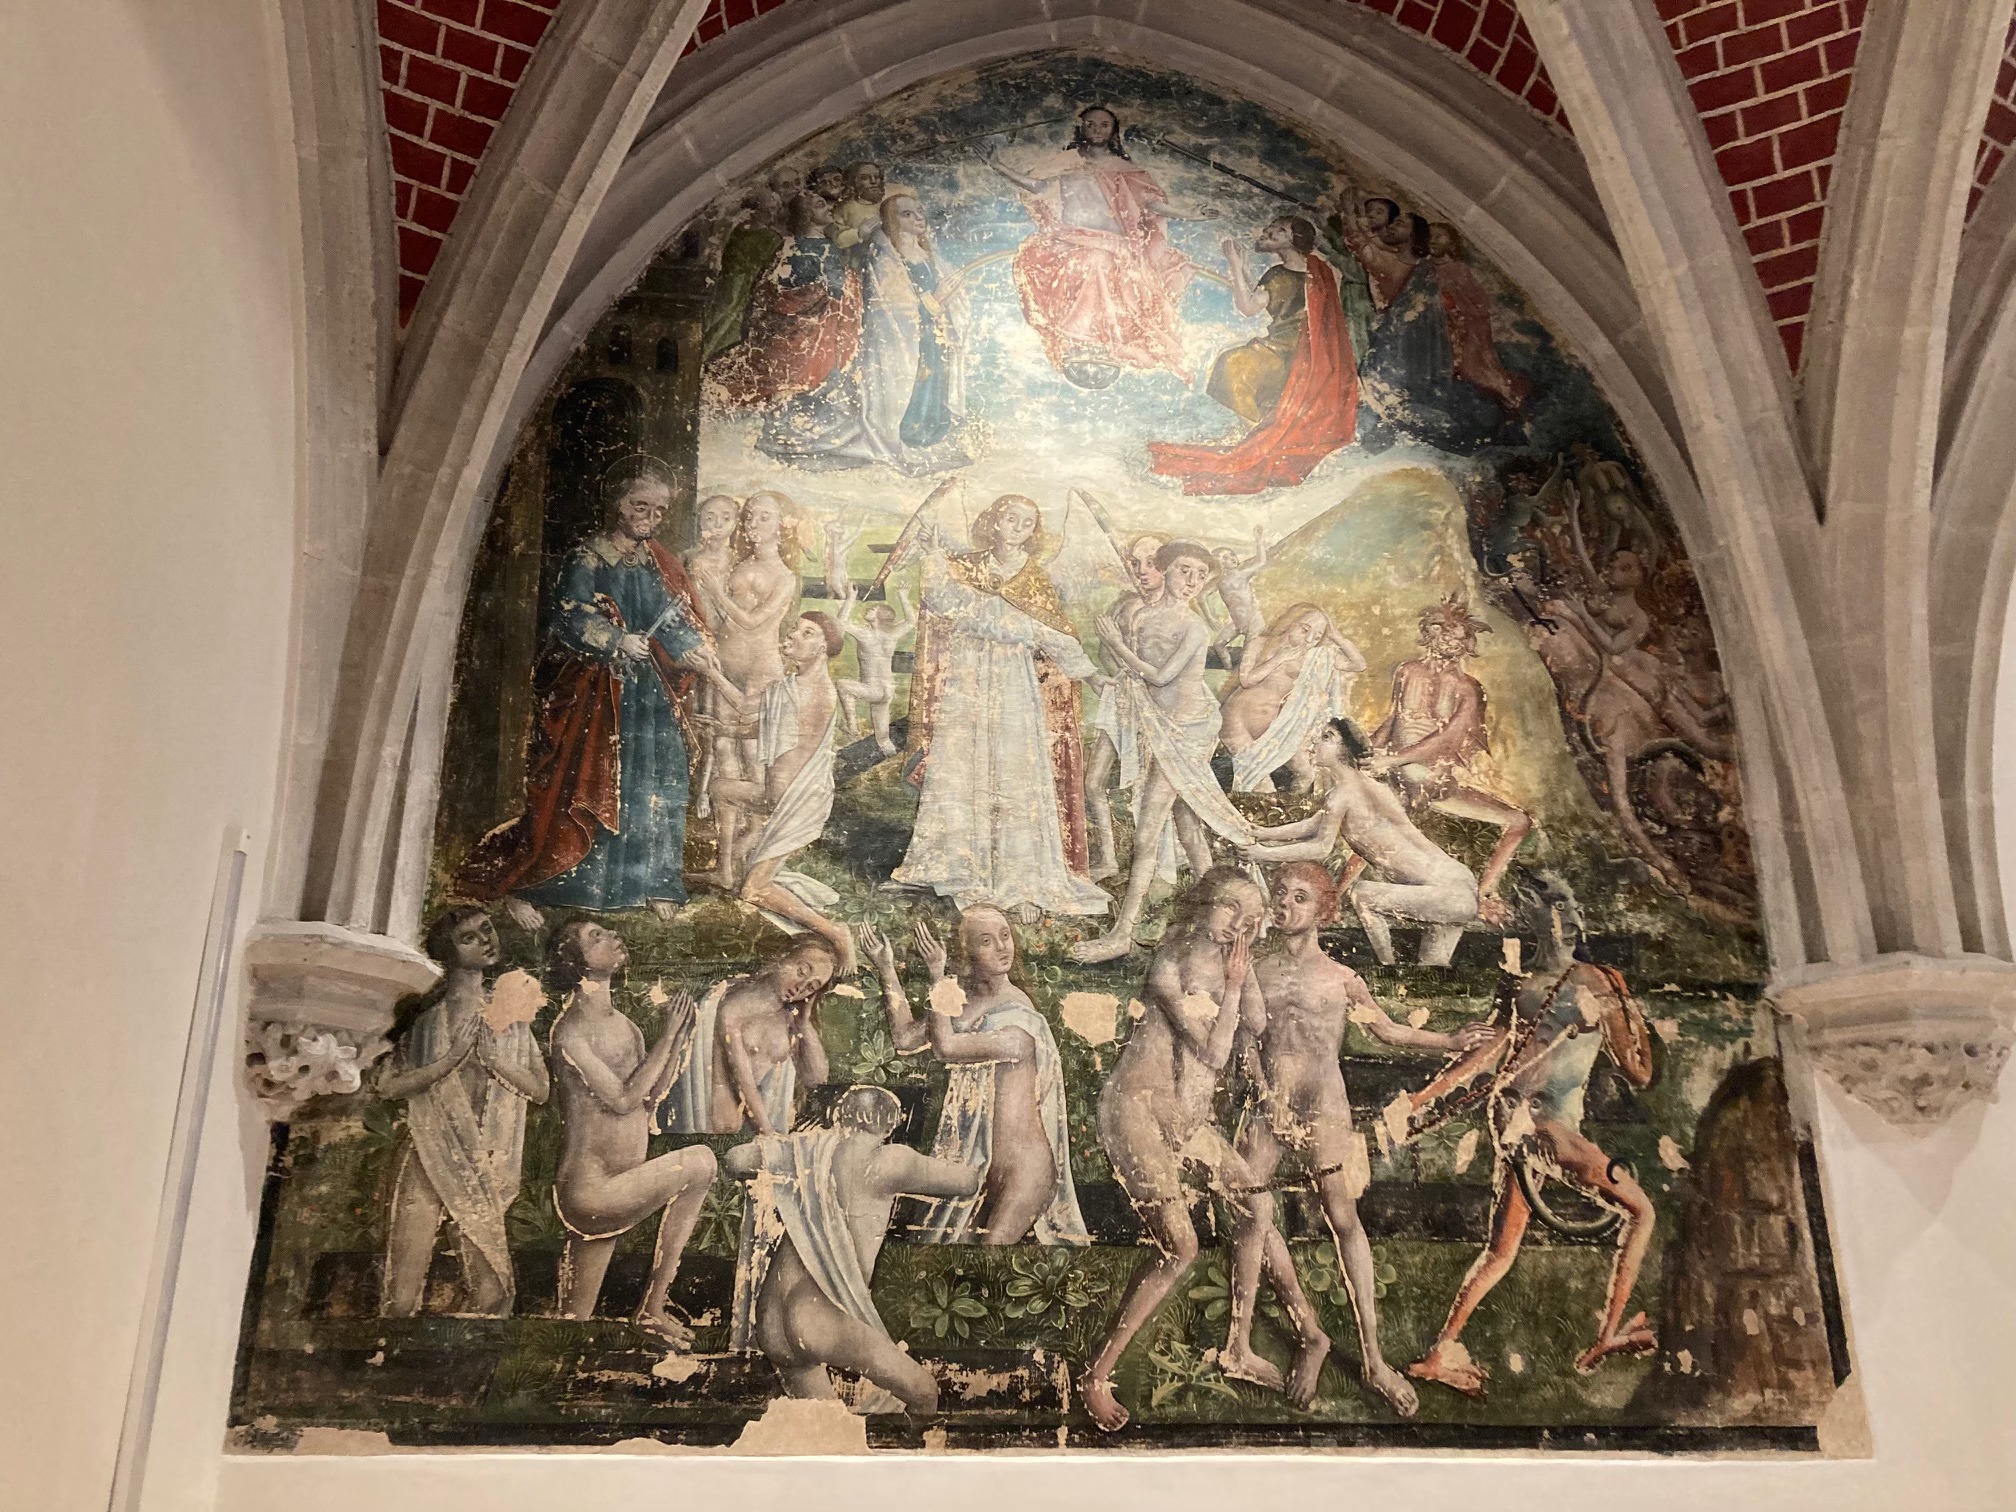 Muurschildering in Sint-Martinuskerk uitzonderlijk te bezichtigen op Erfgoeddag